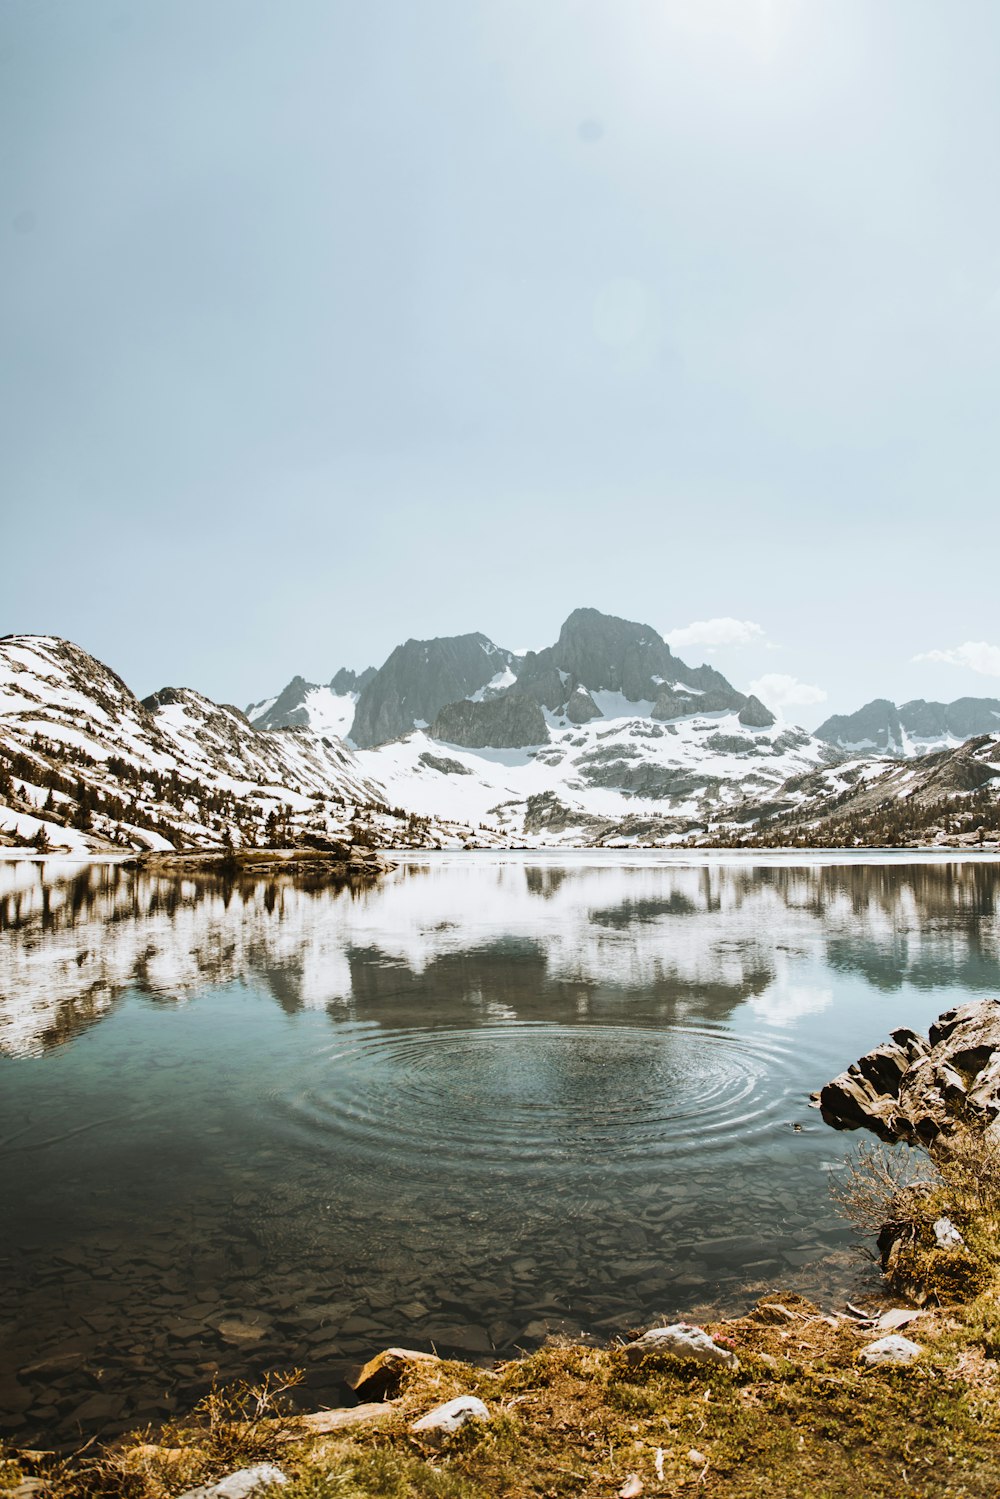 specchio d'acqua circondato da montagne coperte di neve durante il giorno